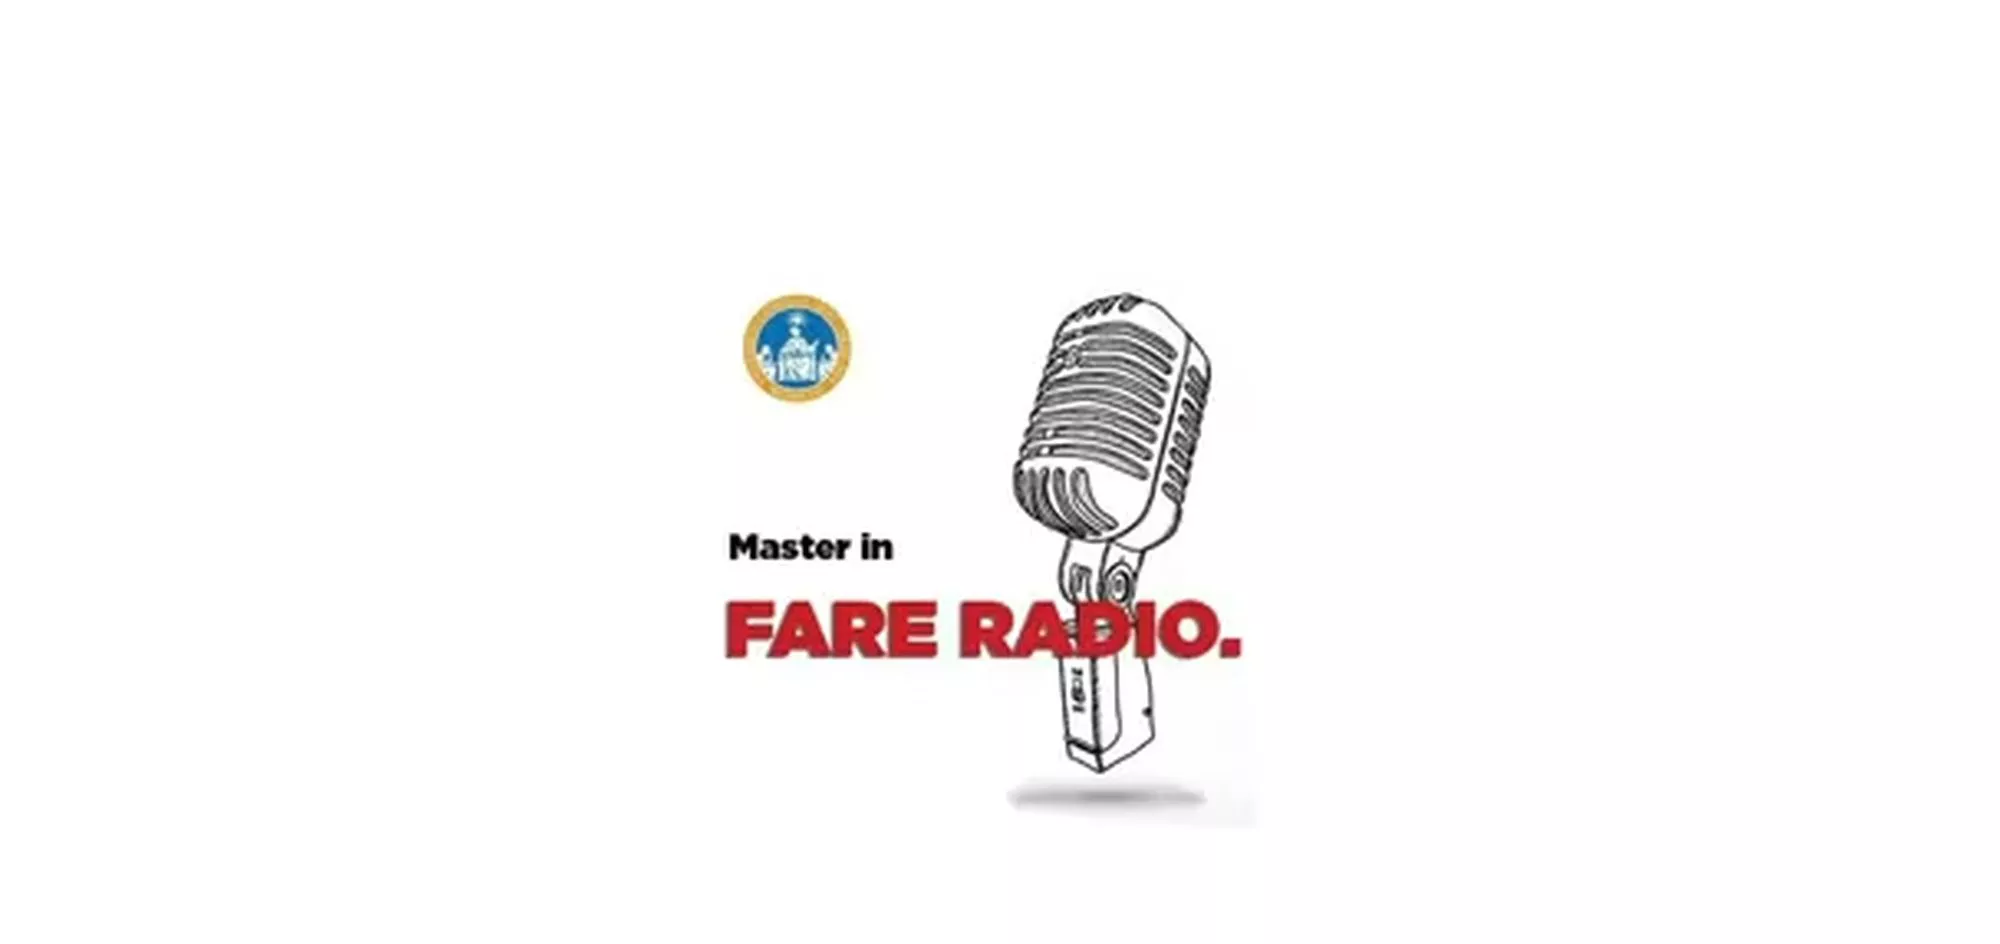 I Love My Radio continua con Fare Radio: cos'è e come funziona